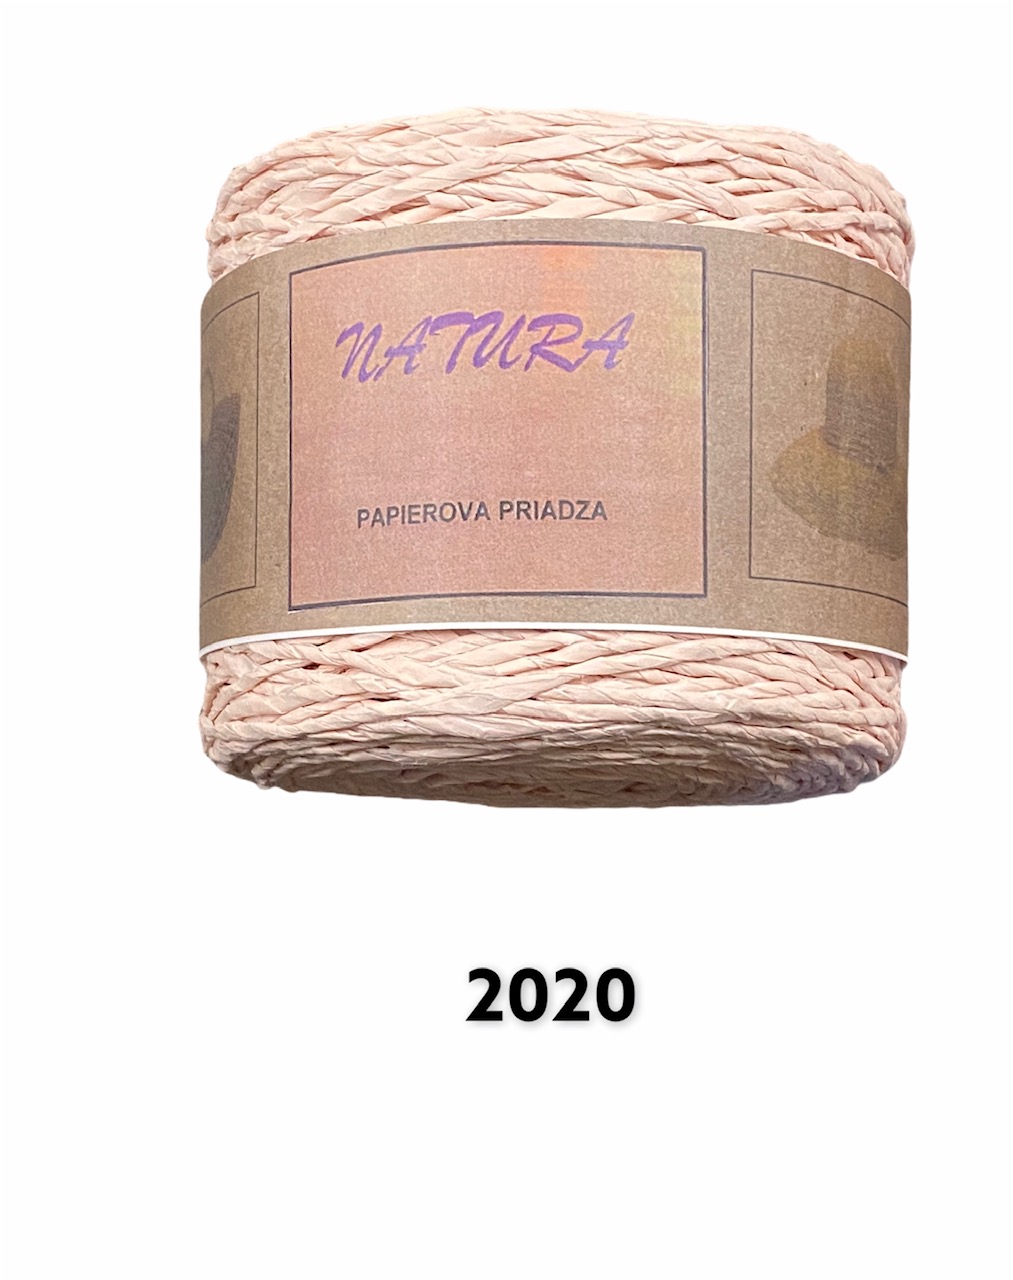 Natura 250g; 2020